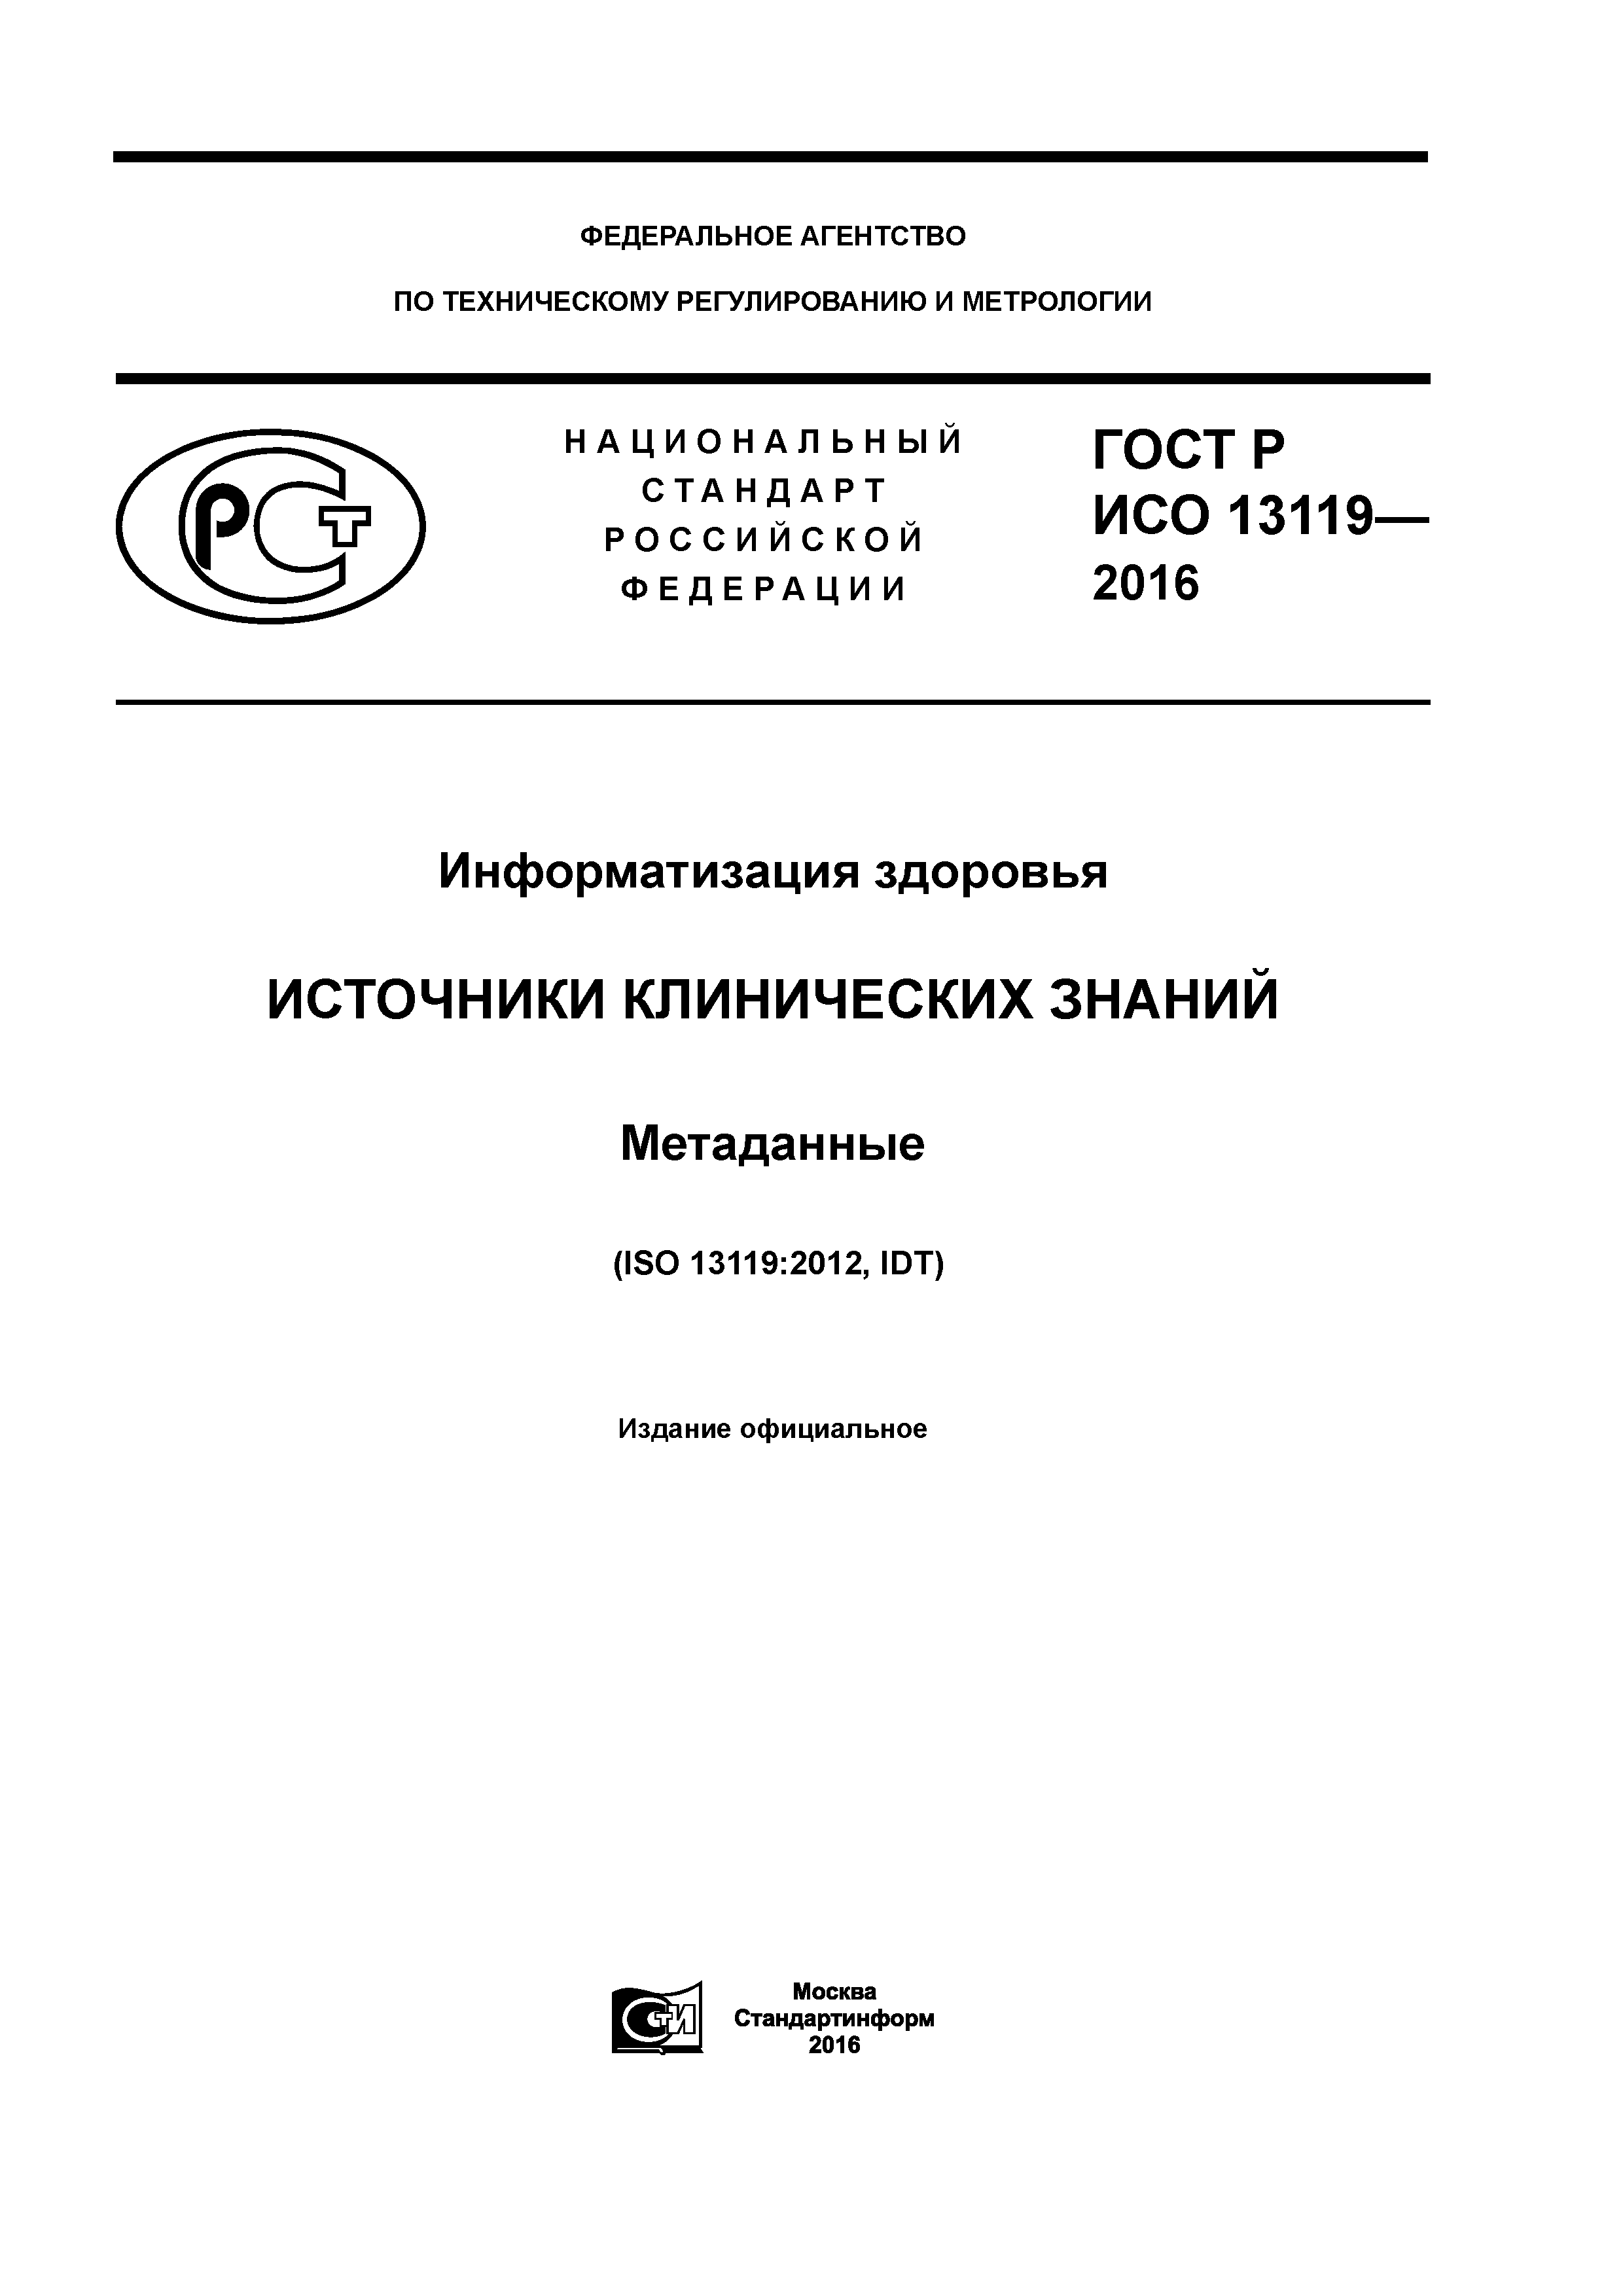 ГОСТ Р ИСО 13119-2016